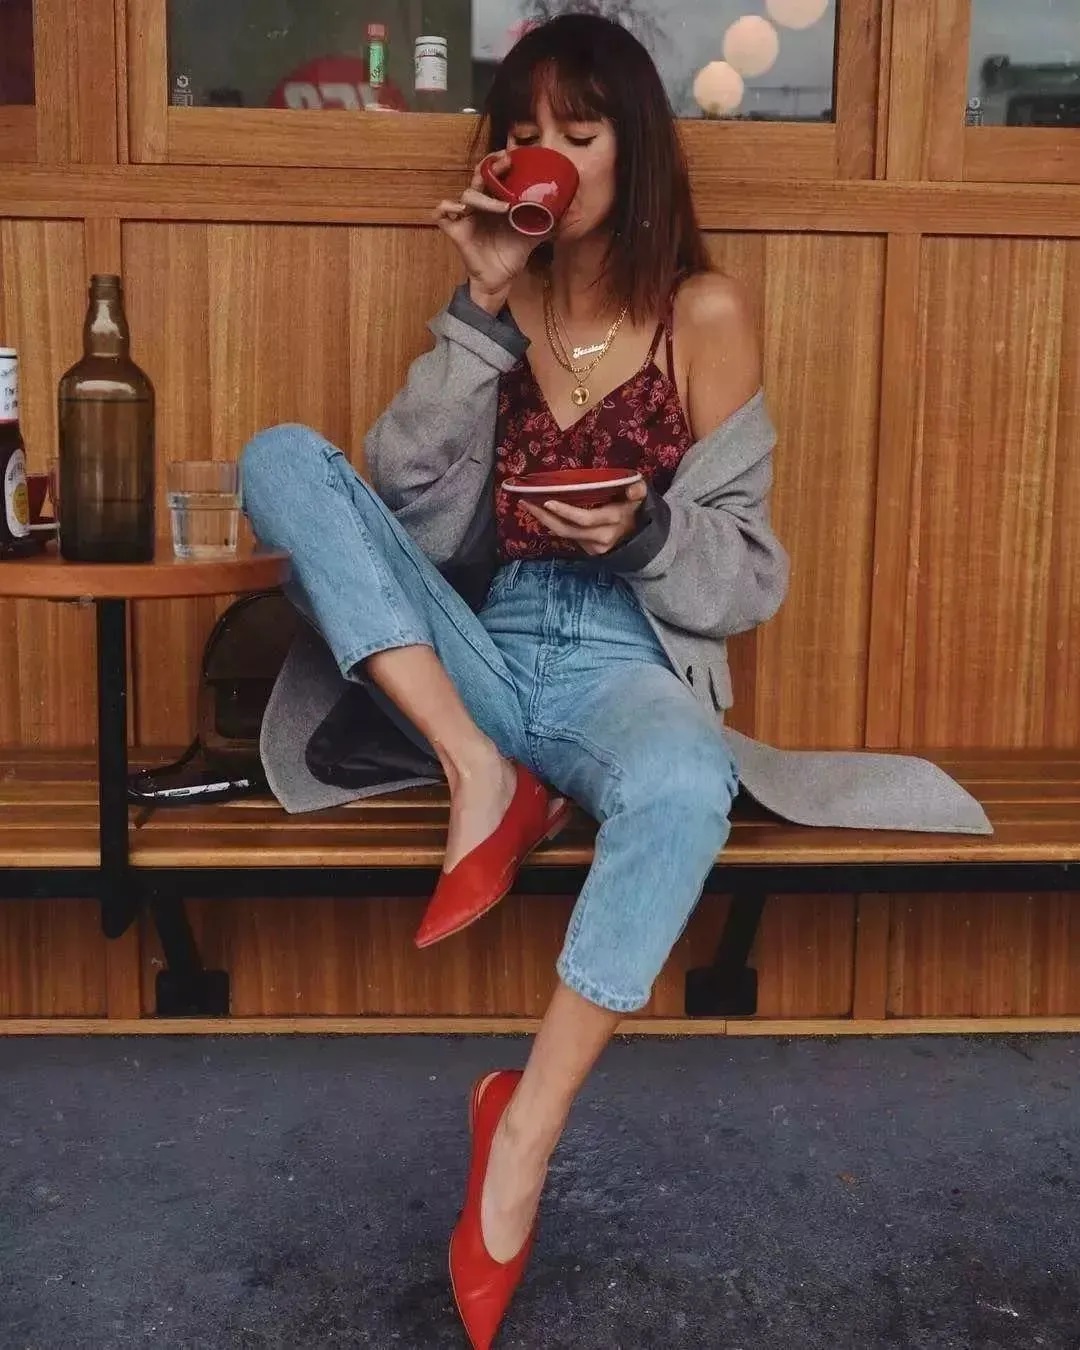 Đừng mãi quanh quẩn với giày đen/trắng nữa, giày đỏ mới thực sự giúp nâng tầm style và khiến bạn trông sang như gái Pháp - Ảnh 11.